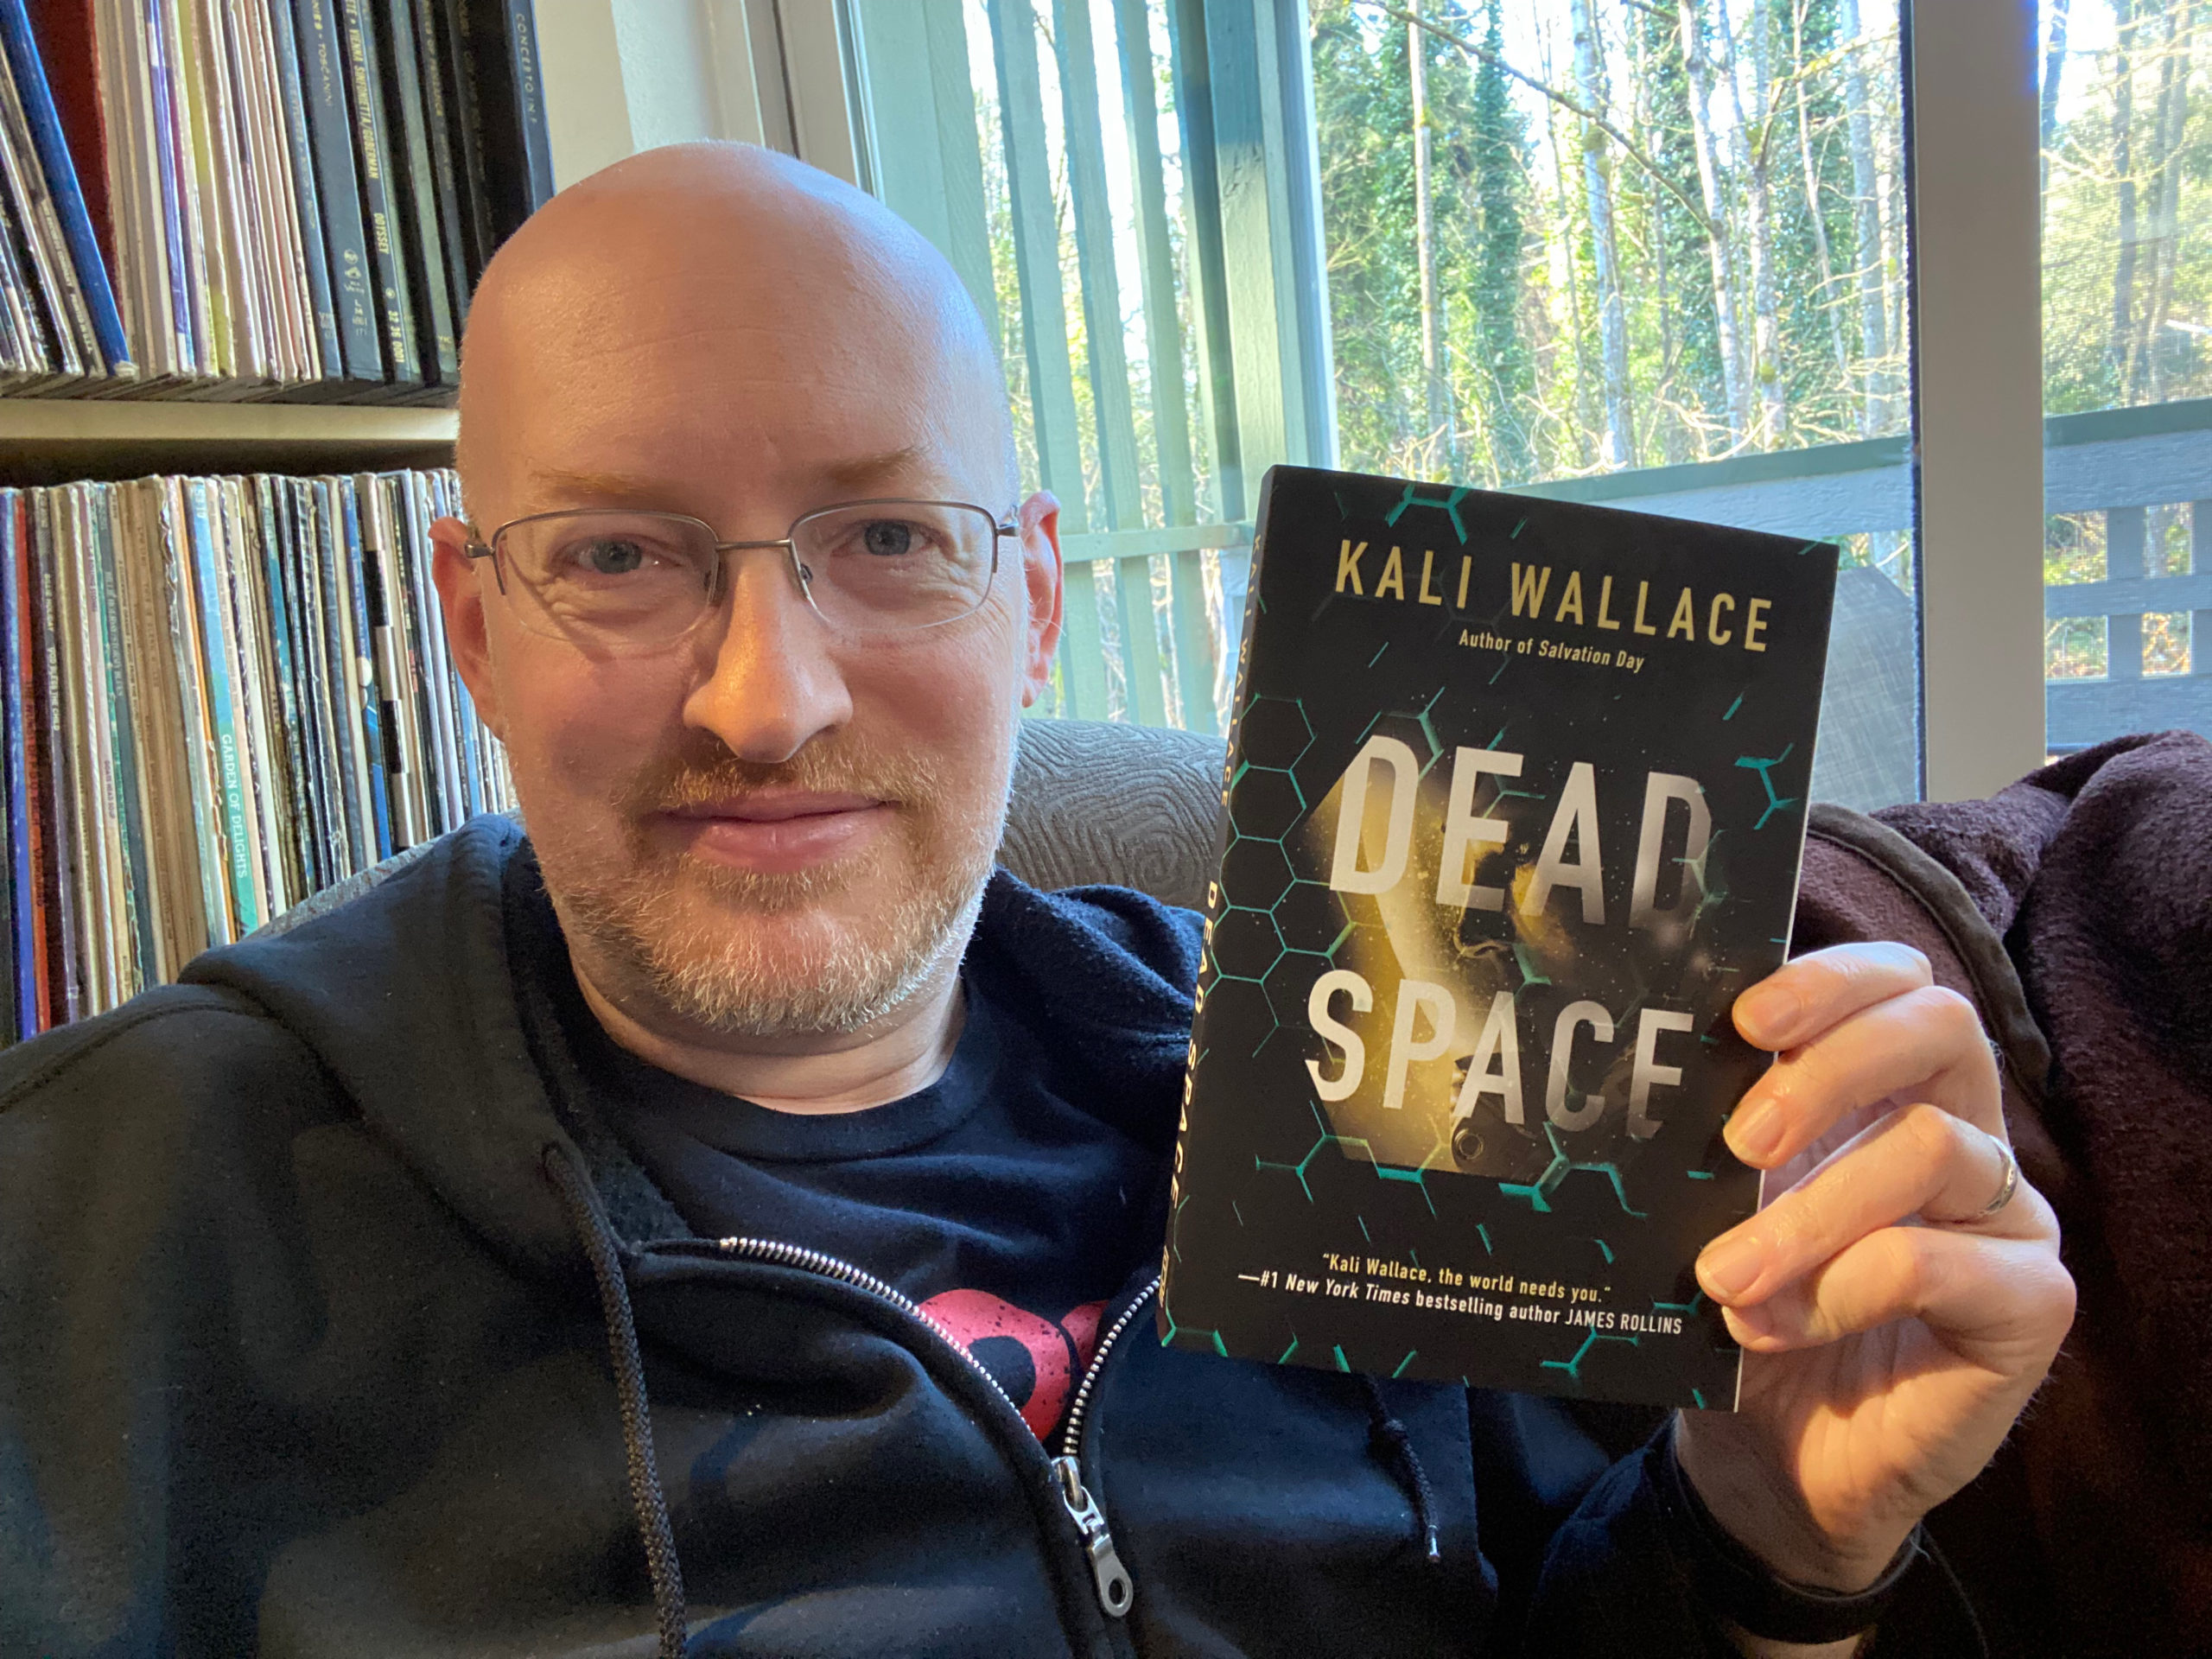 Dead Space by Kali Wallace